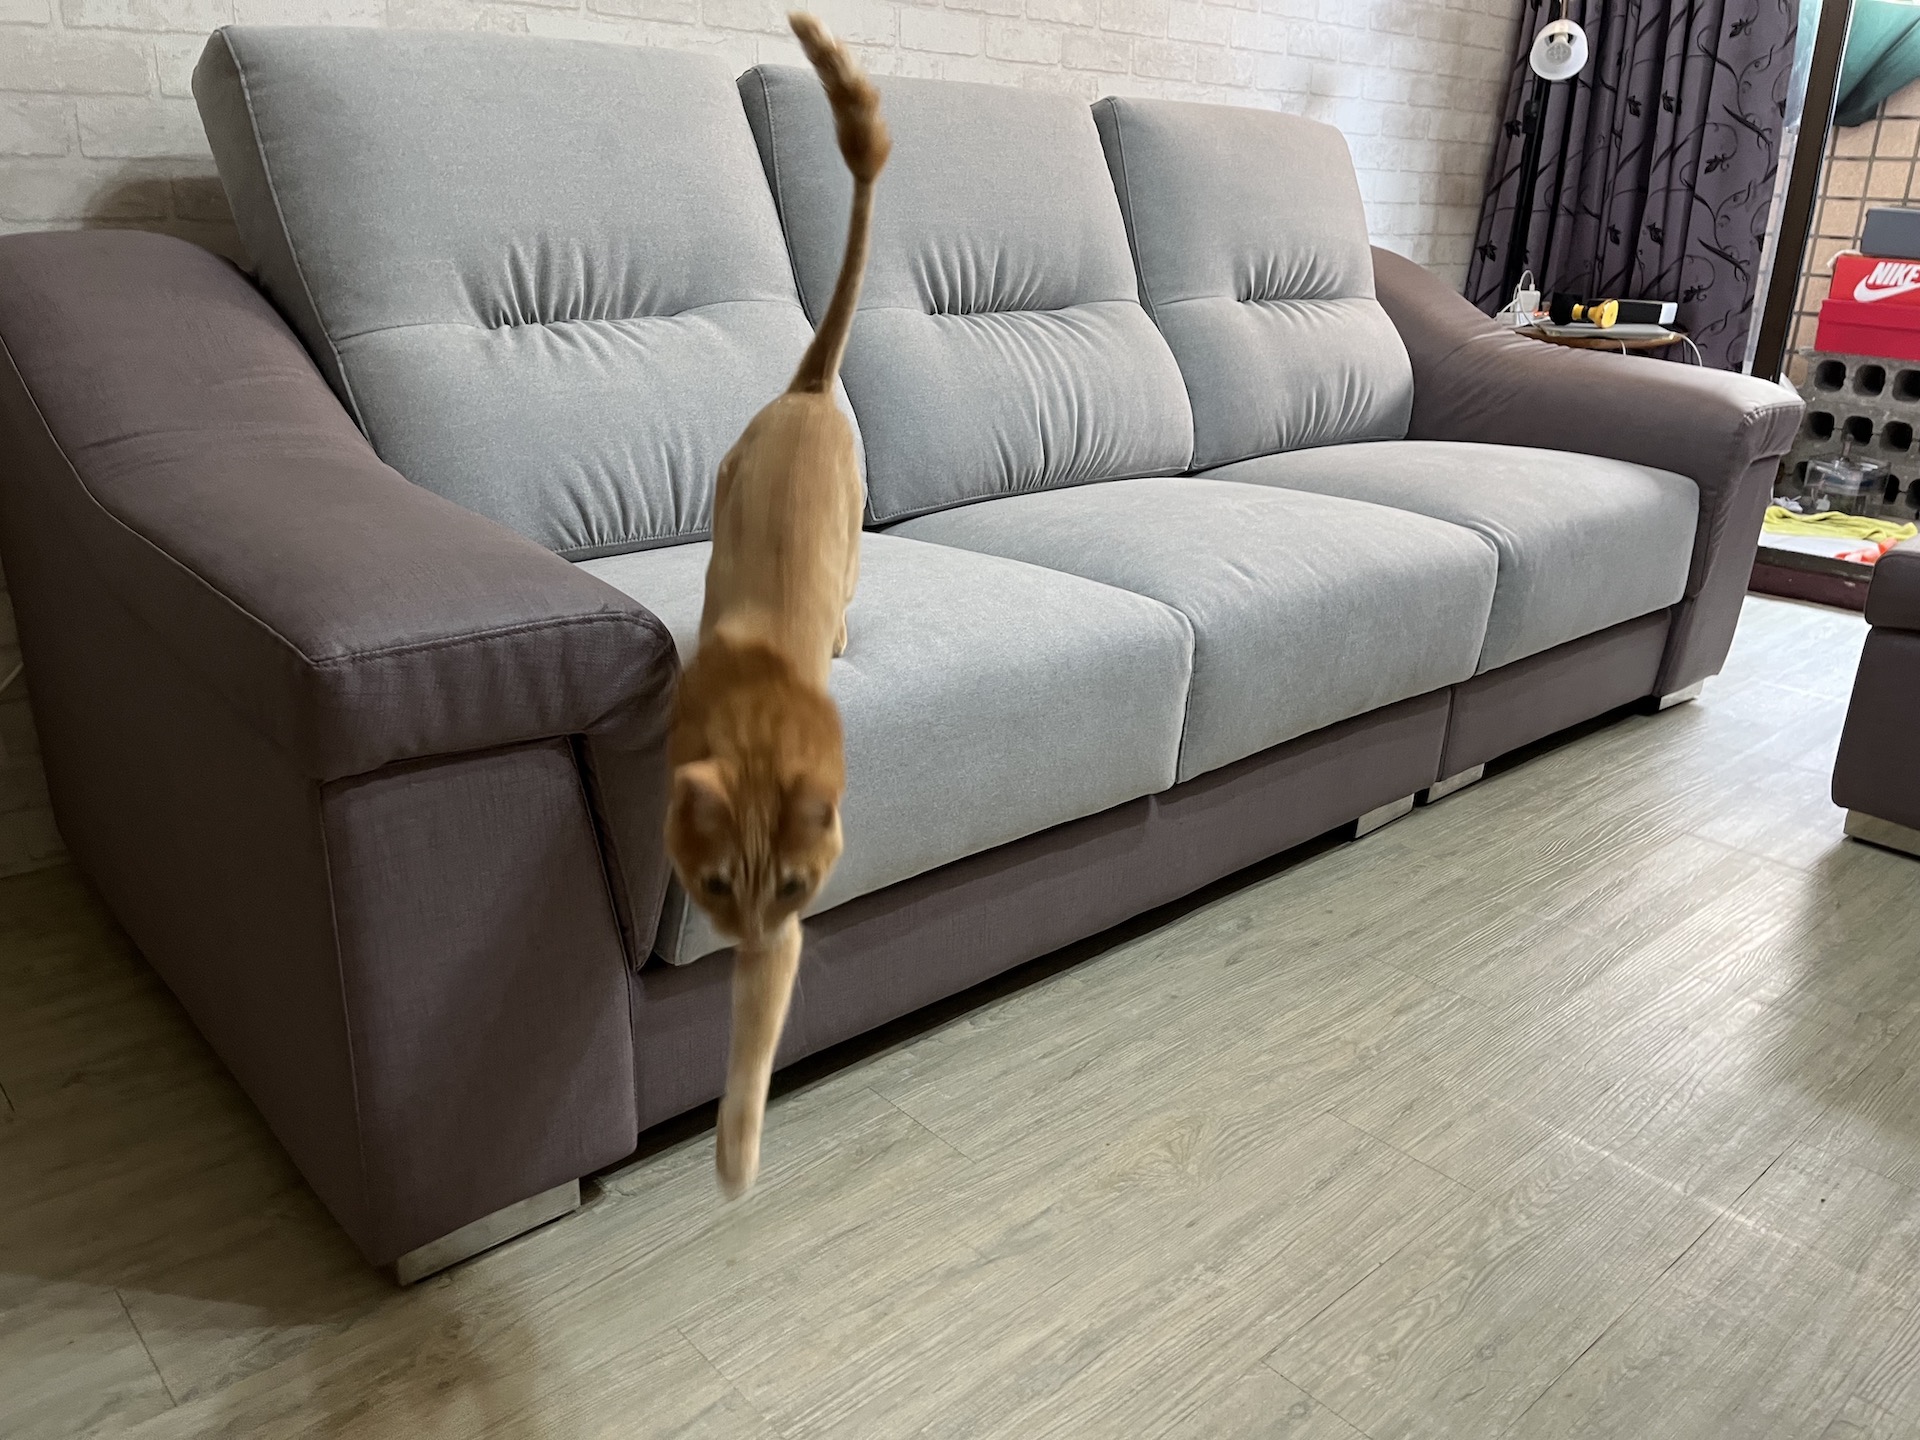 【客戶案例分享】台中太平沙發坐墊背枕更換貓抓布